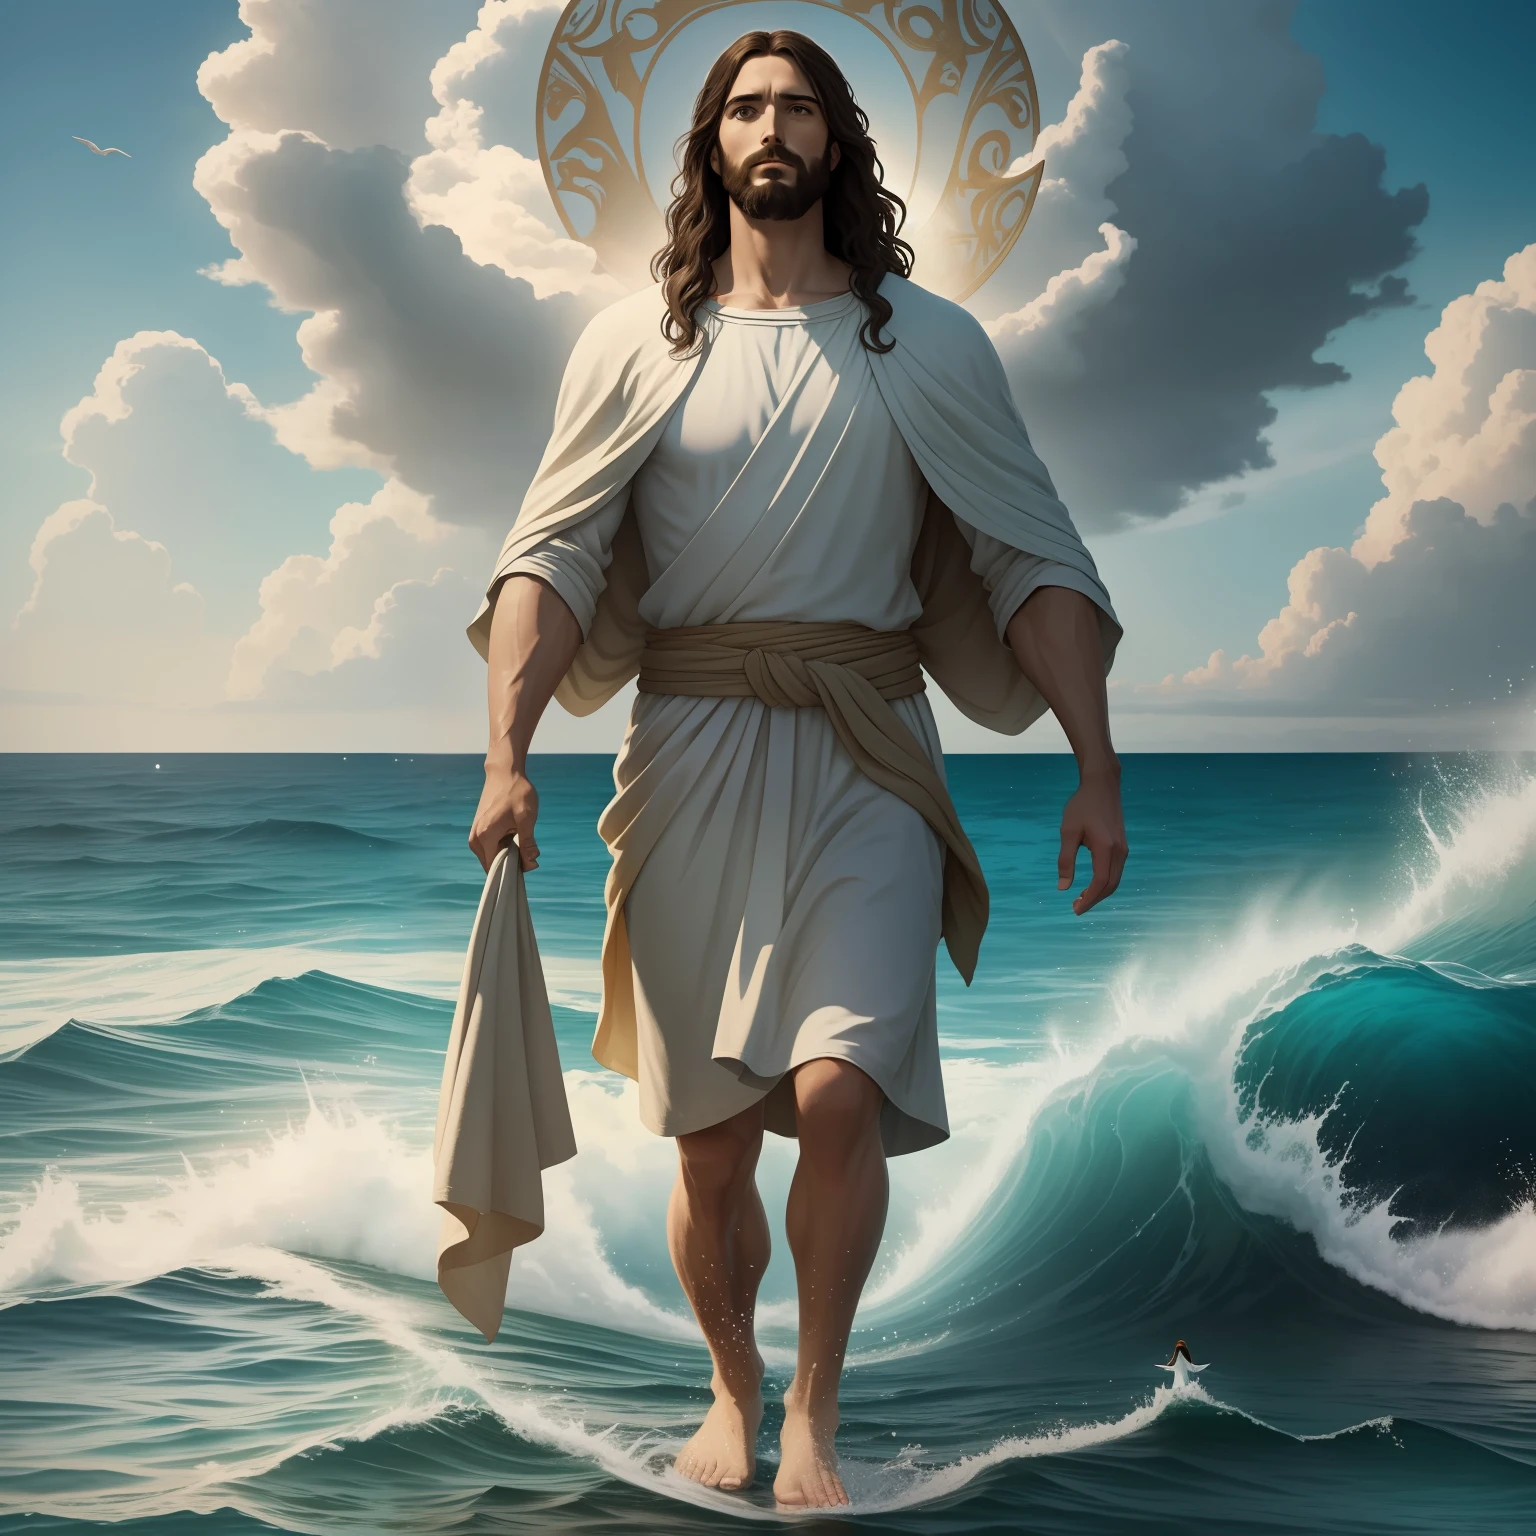 耶稣在水上行走 with a heaven cloud in the background, 耶稣在水上行走, 圣经插图, 史诗圣经代表, 迫使他逃跑, 从海洋里出来, ! 手拿!, 帮助人的祝福, 下船, 海洋之神, 美丽的表现, 8k阳光祝福灯, 实际的,